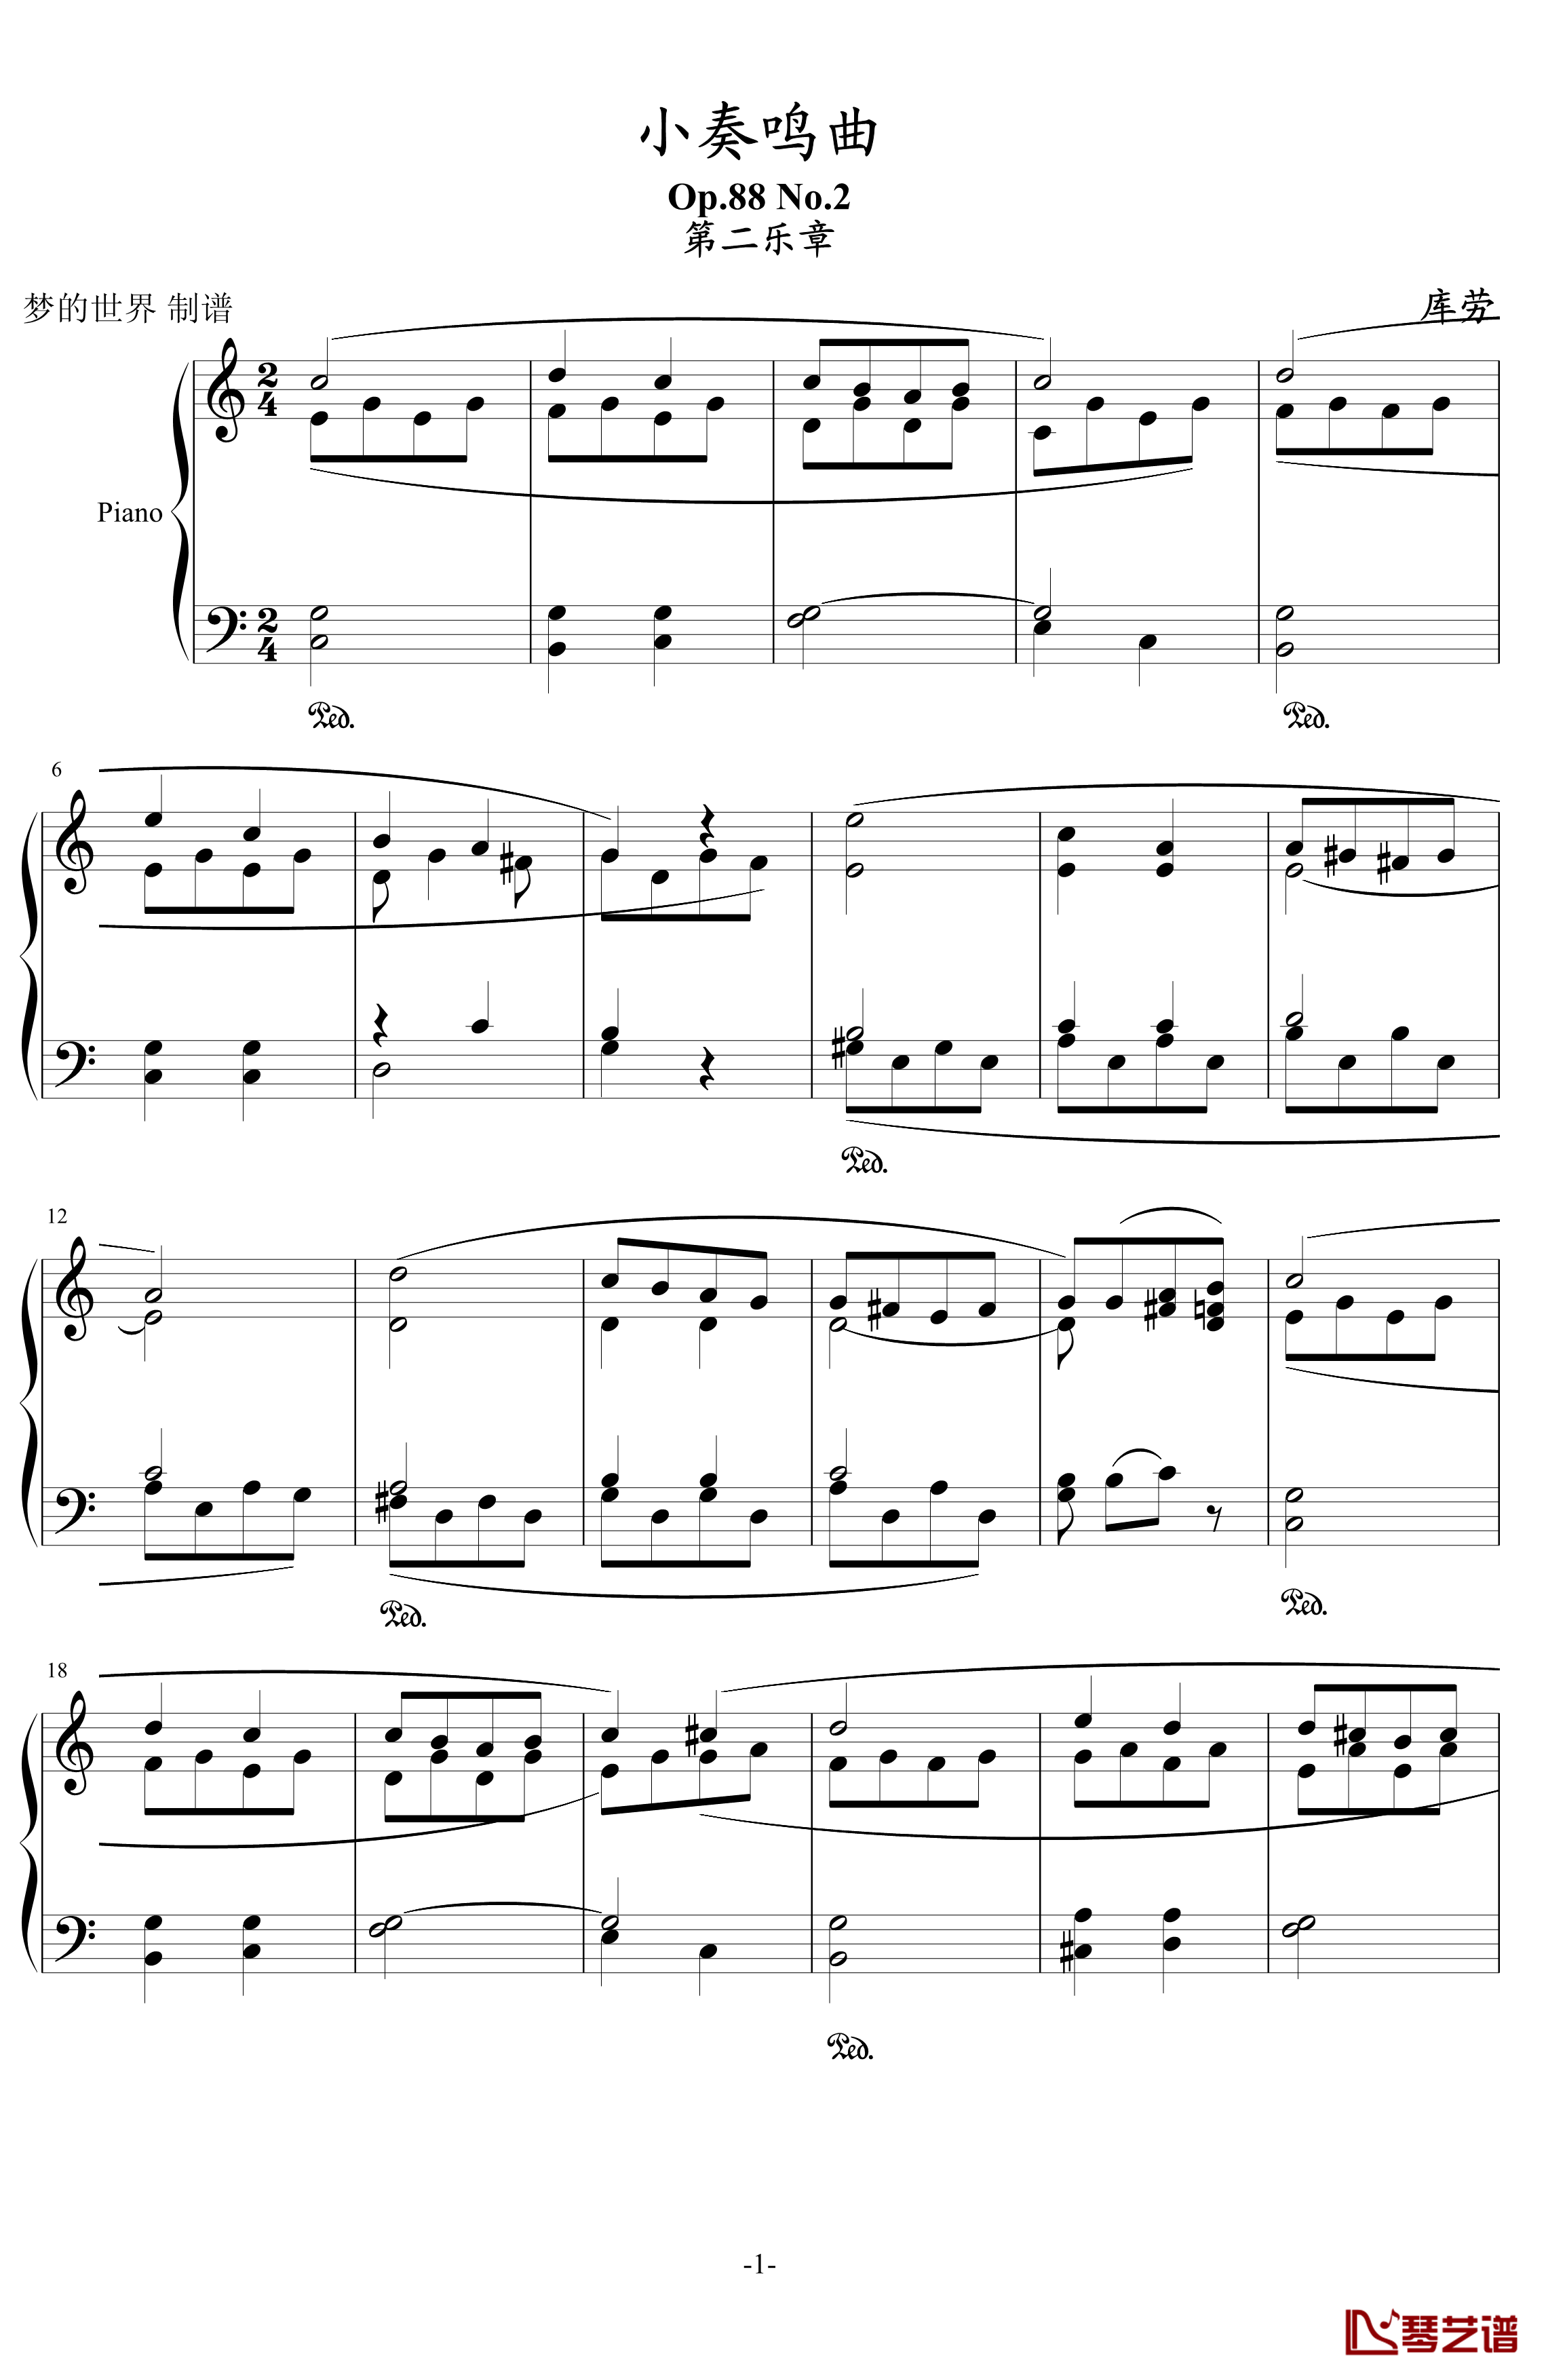 小奏鸣曲钢琴谱-Op.88 No.2-库劳1